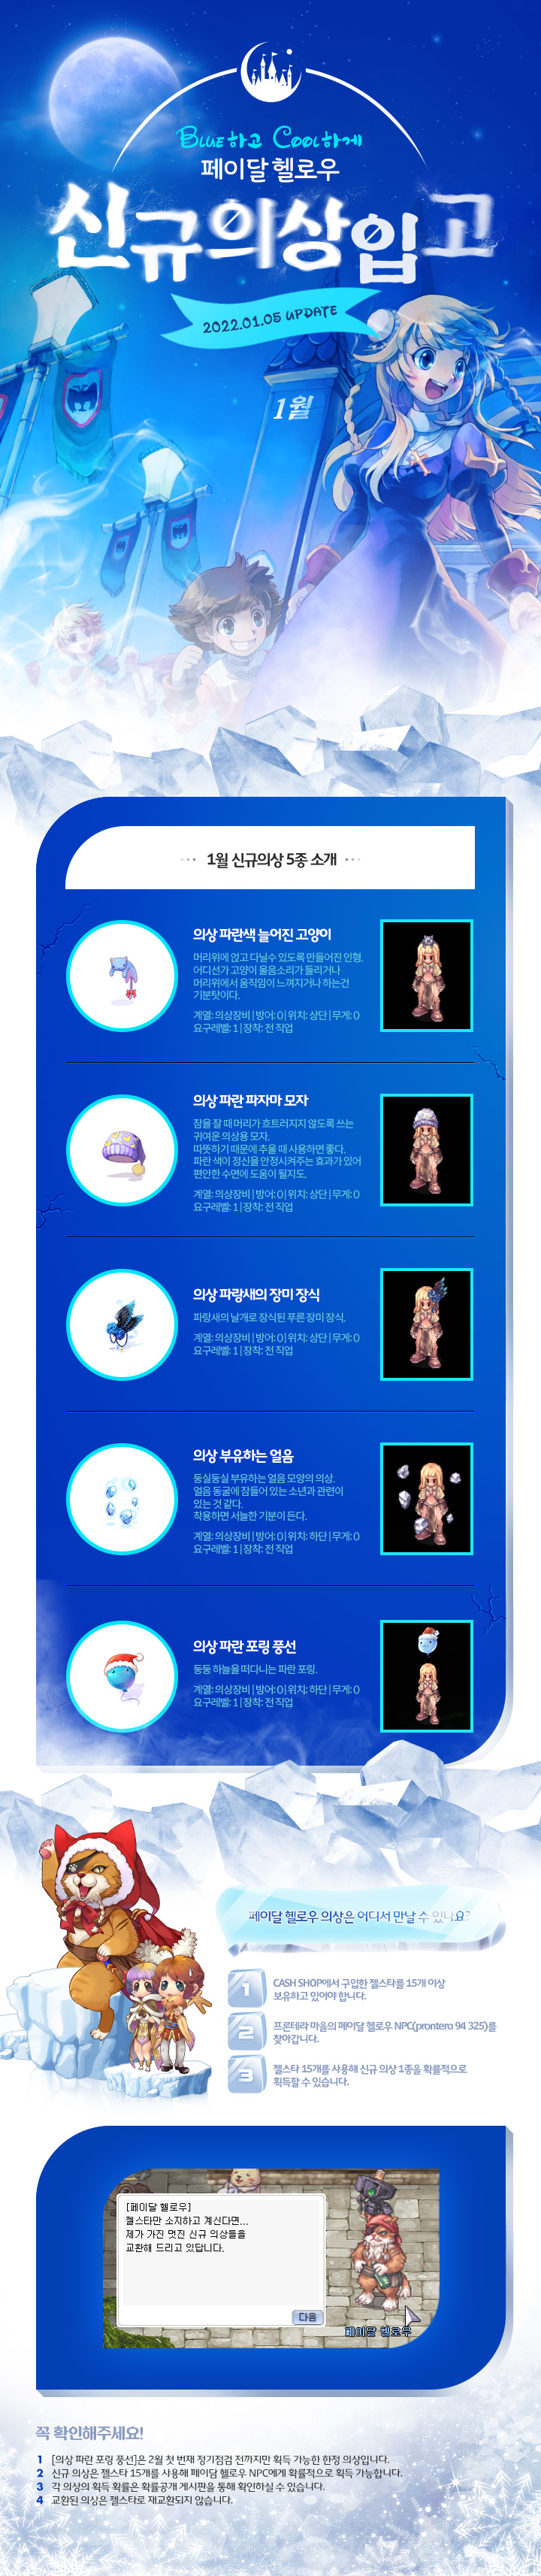 1월 신규 의상 소개페이지 제작 IMG